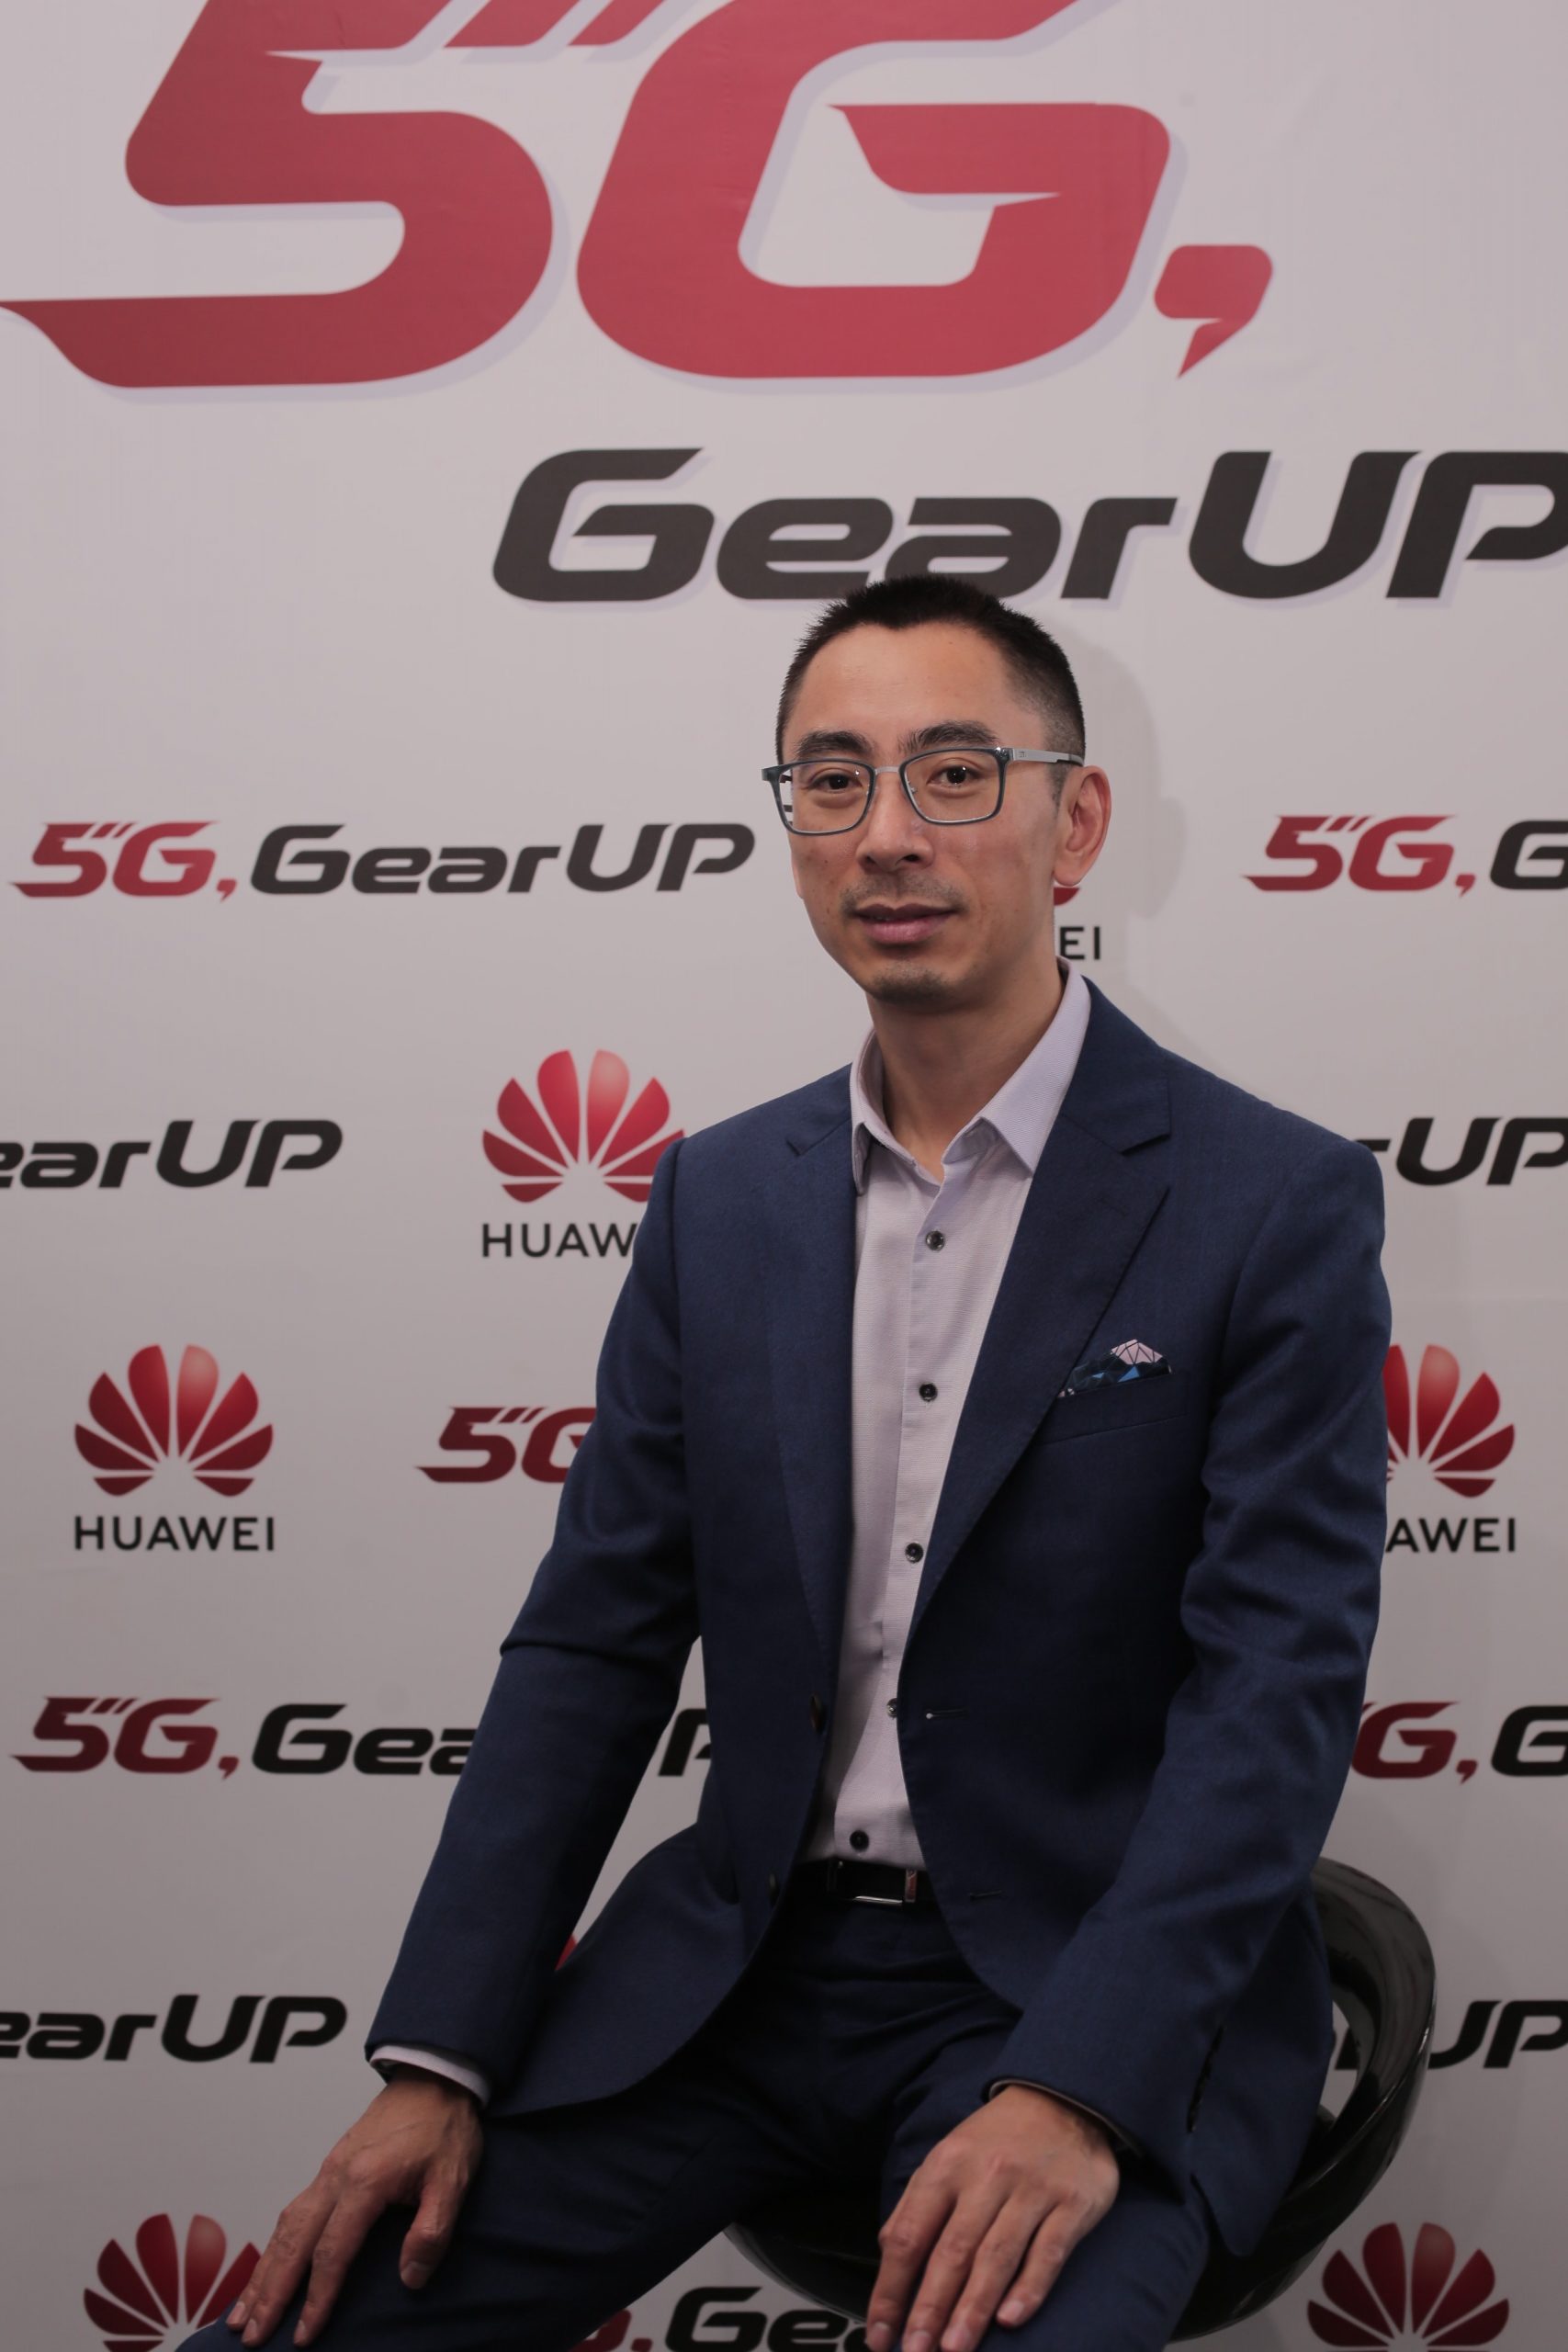 Giám đốc đối ngoại của Huawei khu vực châu Á - Thái Bình Dương chia sẻ về tầm nhìn của Huawei tại khu vực